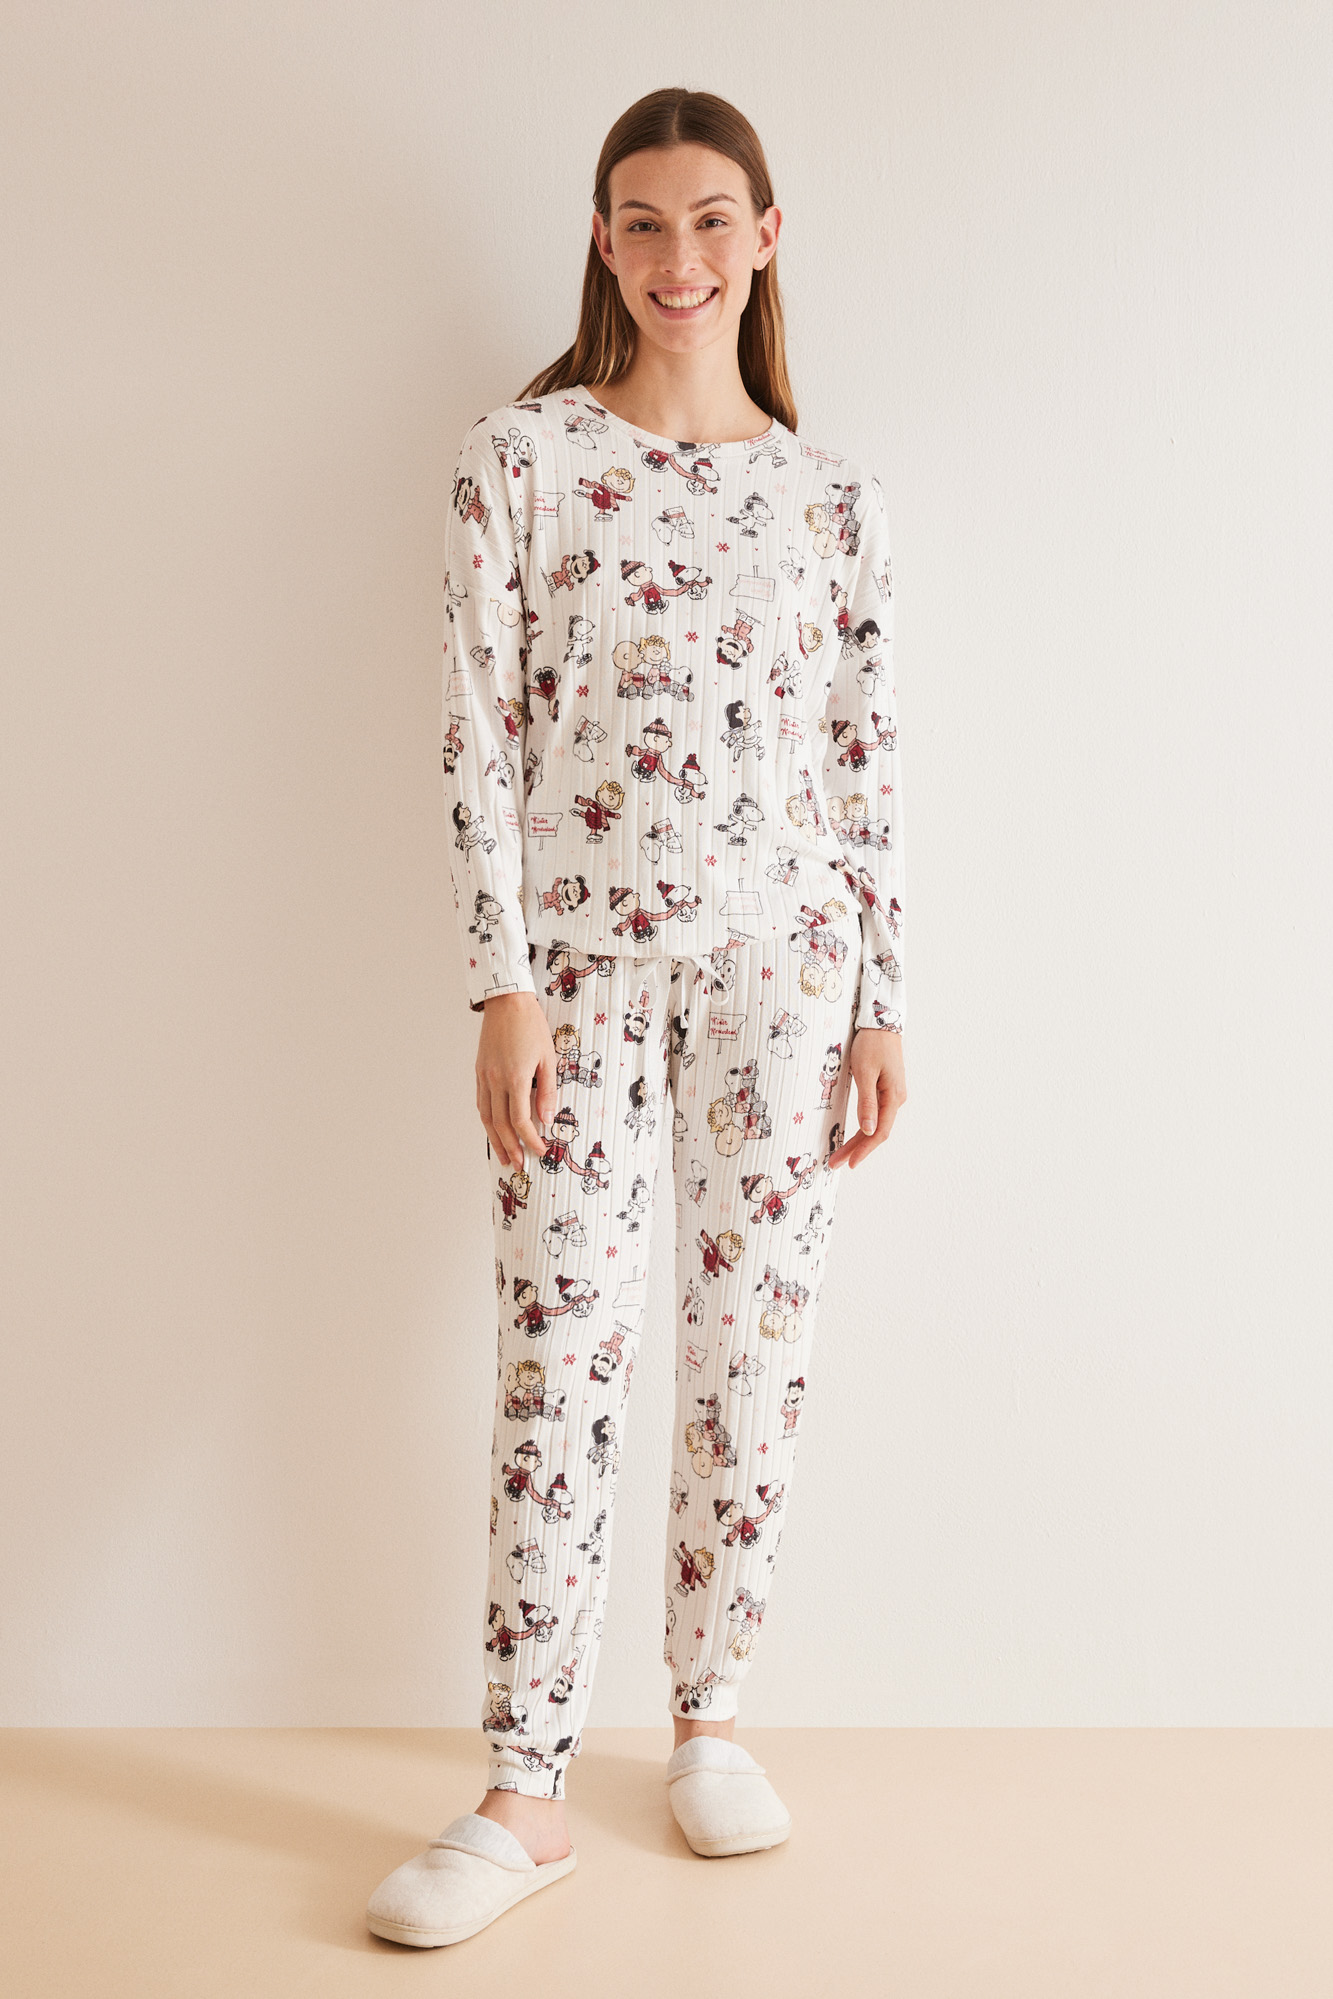 Pijama estampado Snoopy | Ropa de dormir de mujer y homewear | WomenSecret